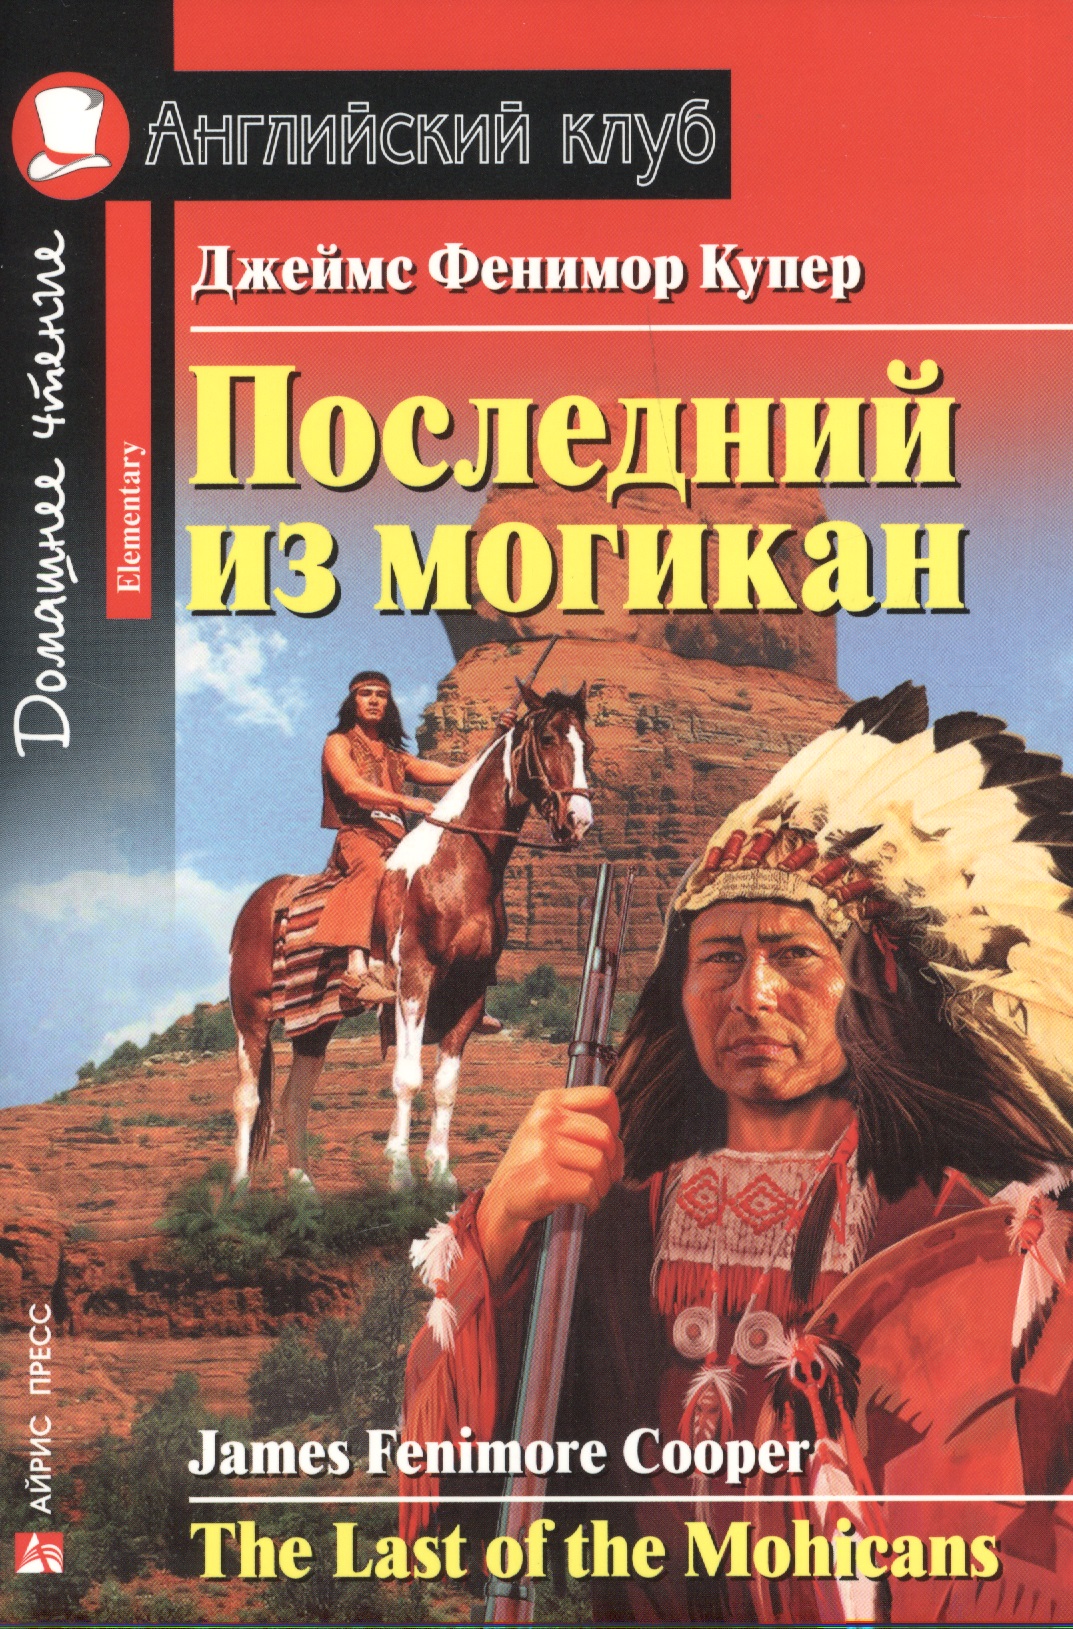 Последний из могикан = The Last of the Mohicans купер джеймс фенимор the last of the mohicans последний из могикан т 2 на англ яз